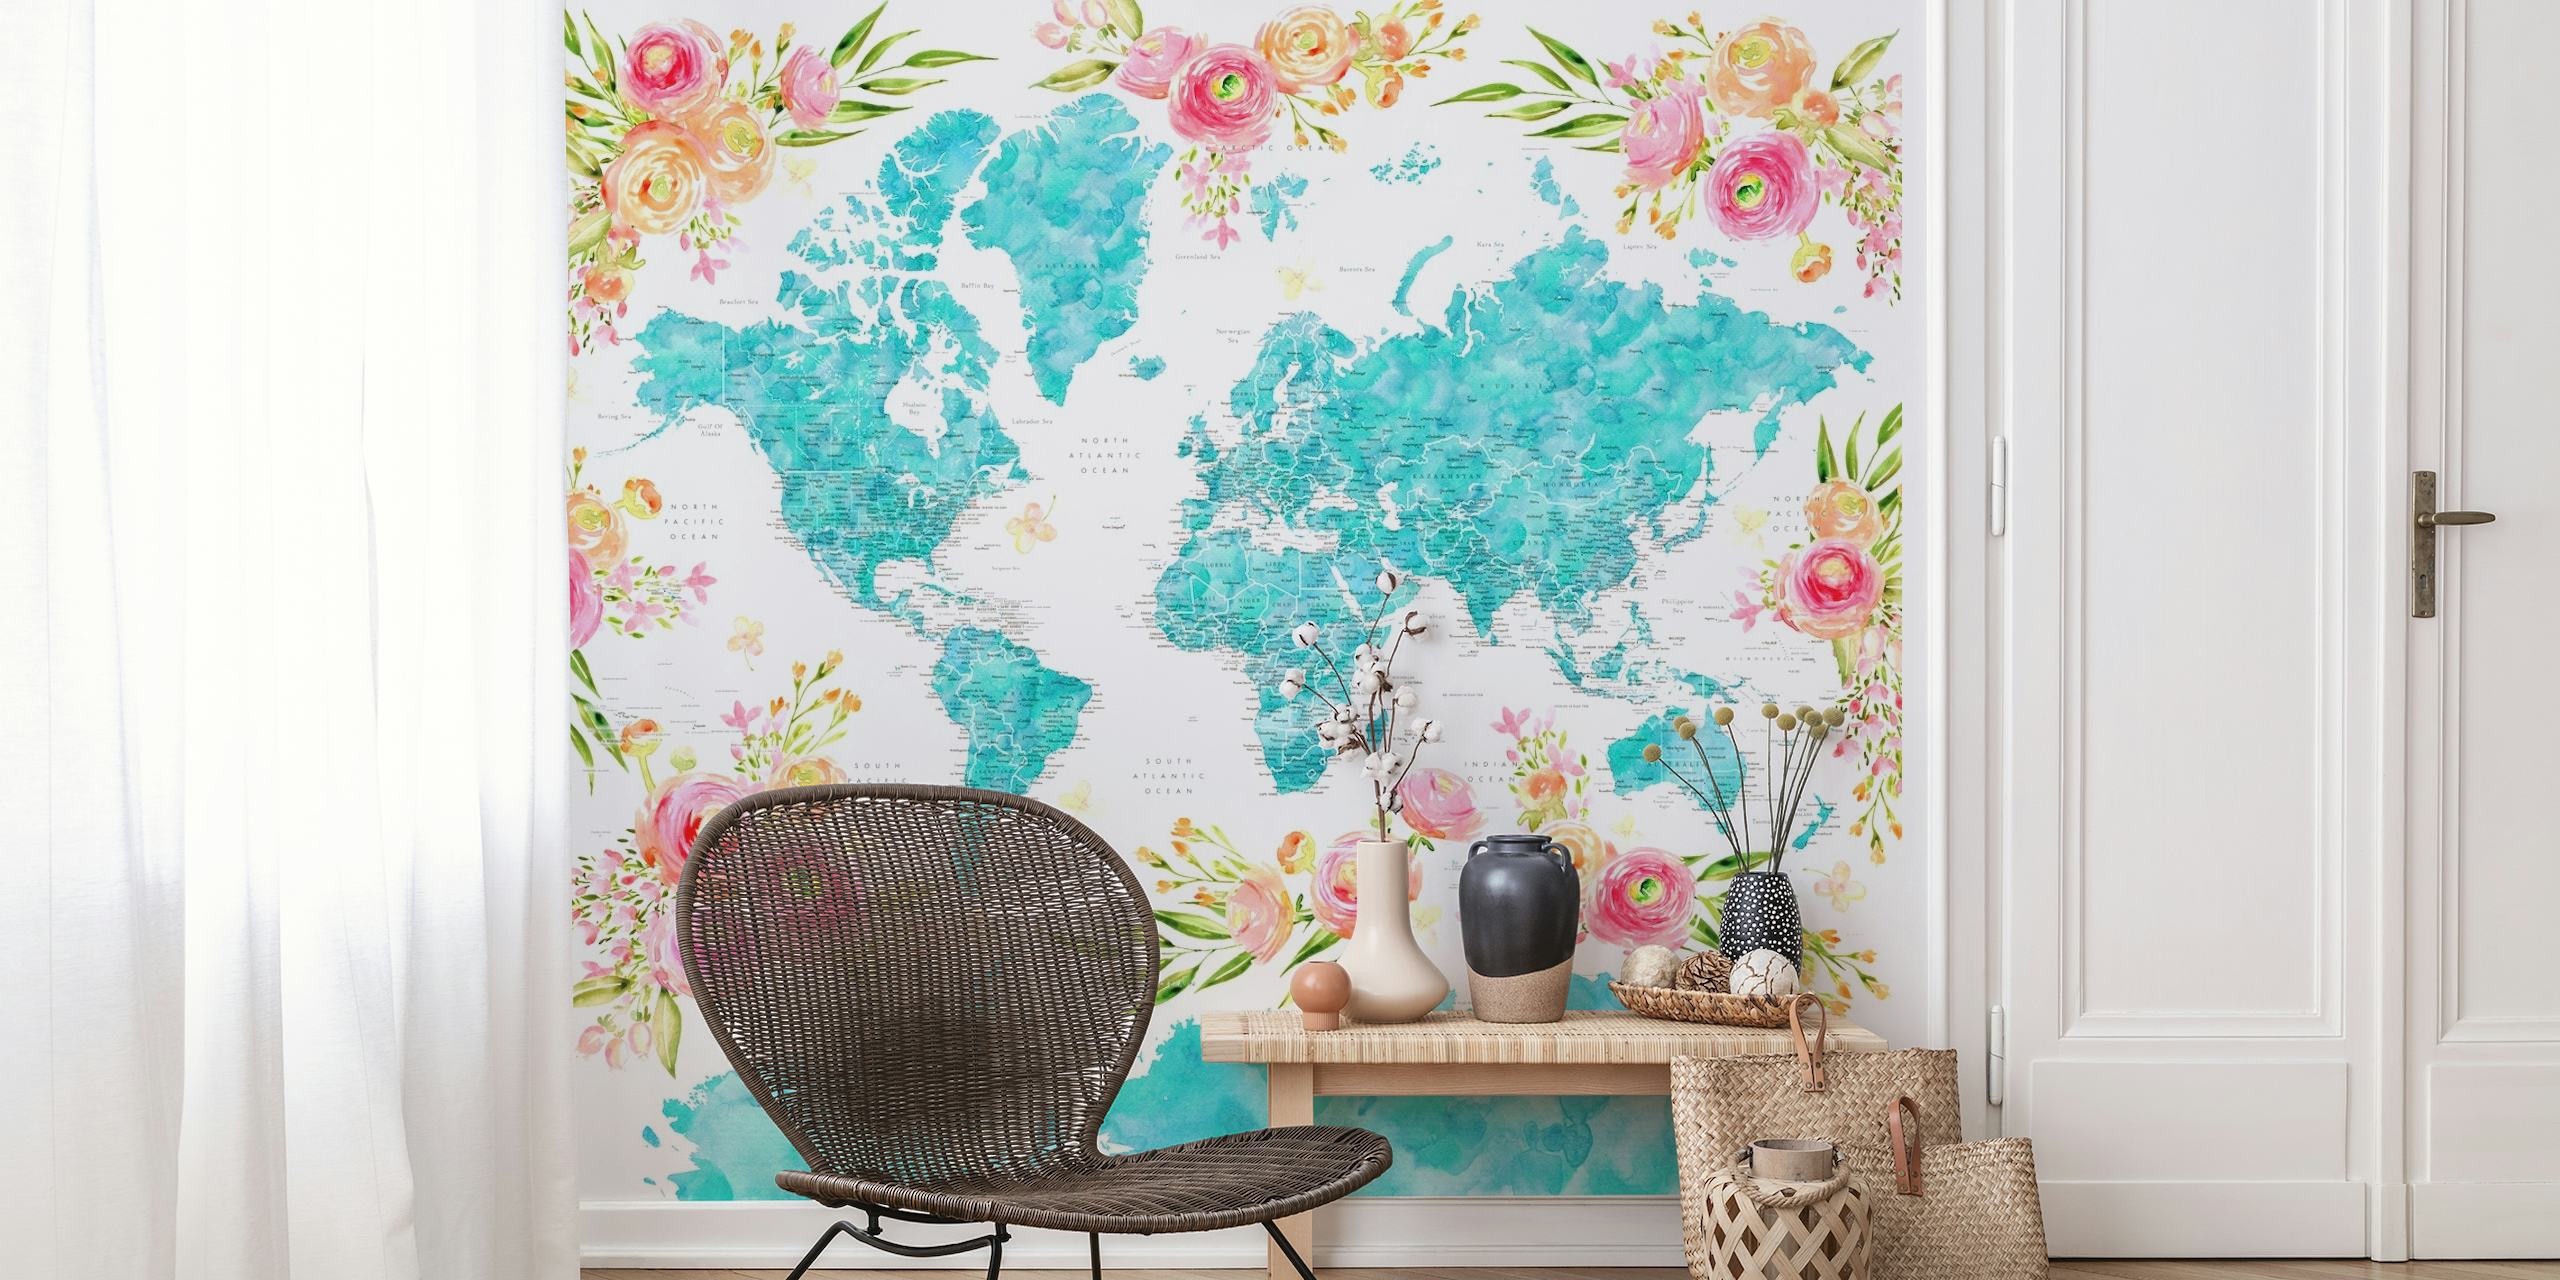 Carta da parati colorata con mappa del mondo con motivi floreali che decorano i continenti